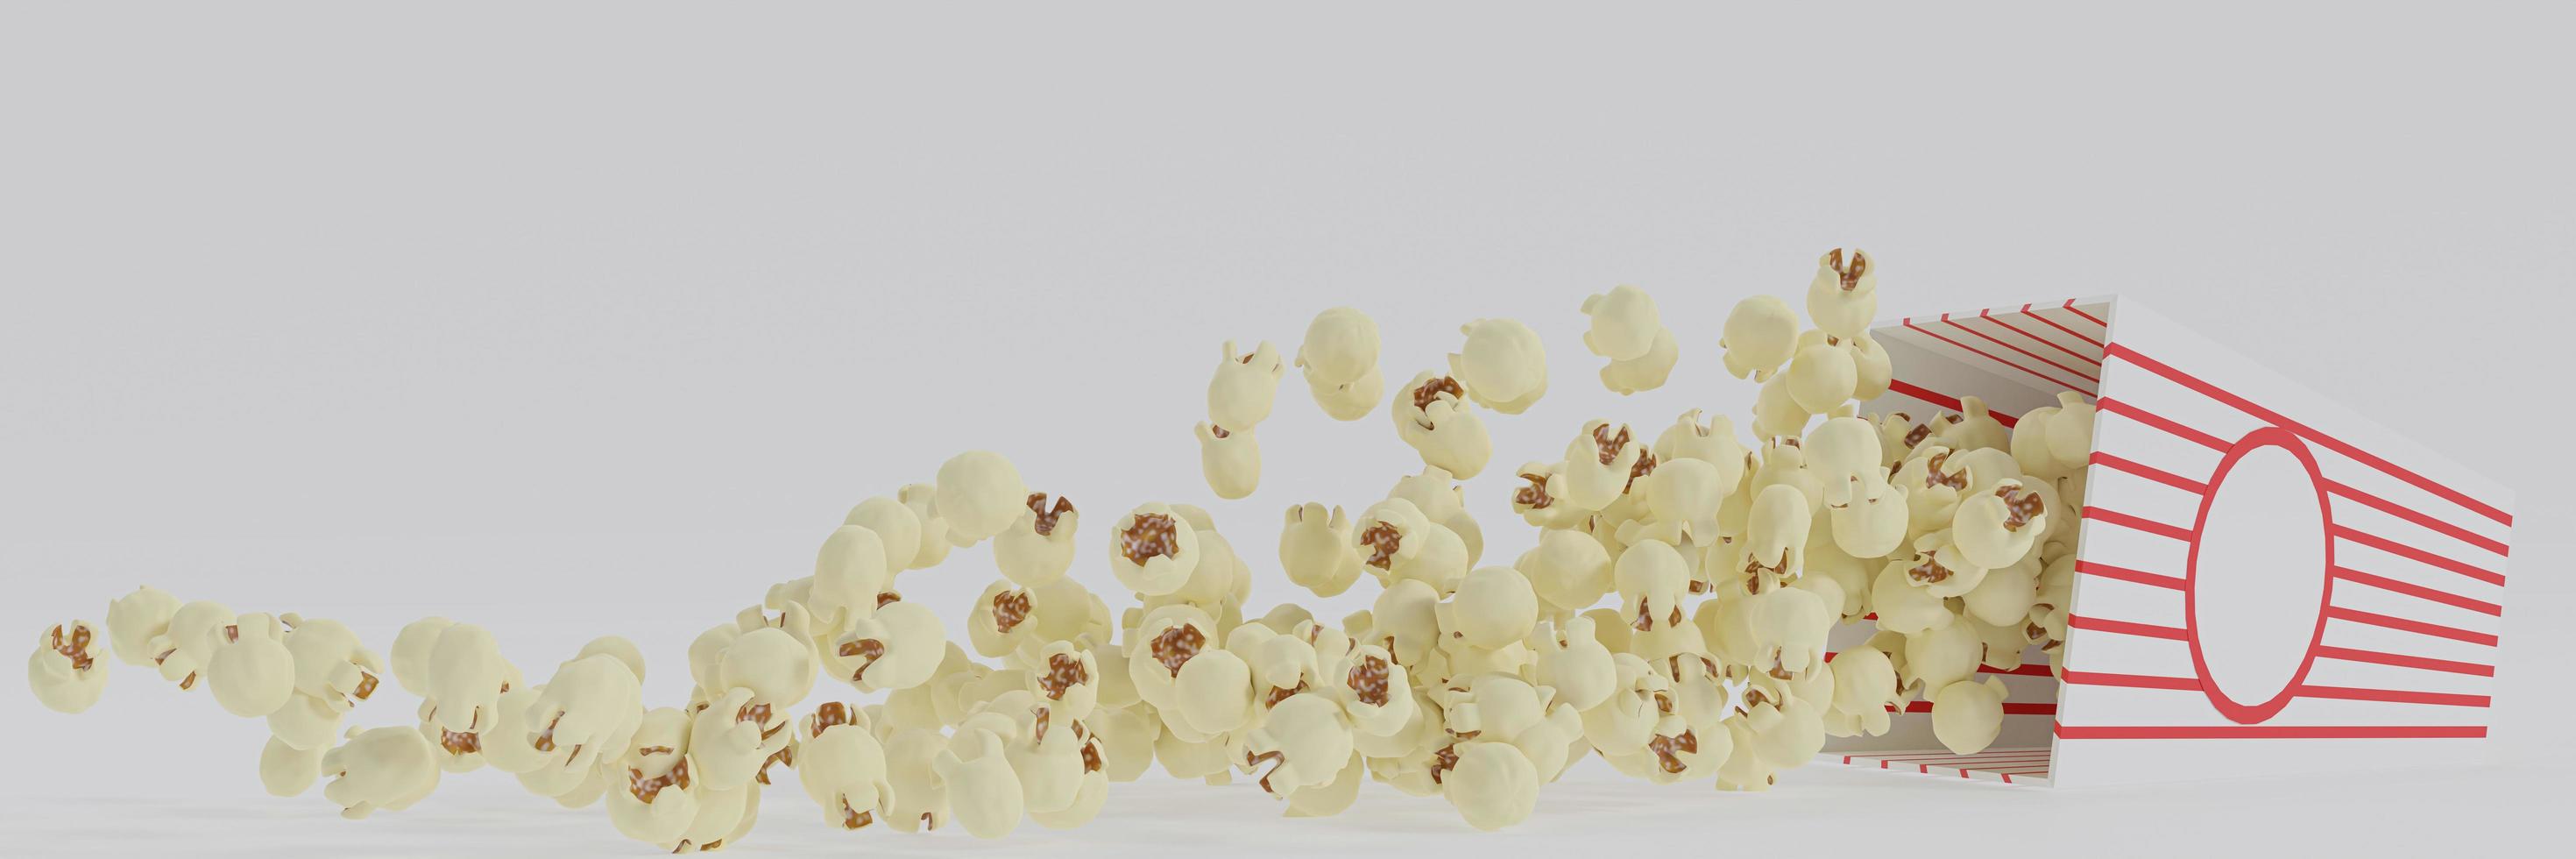 popcorn al burro in secchio di cartone a strisce rosse e bianche isolato su sfondo bianco foto